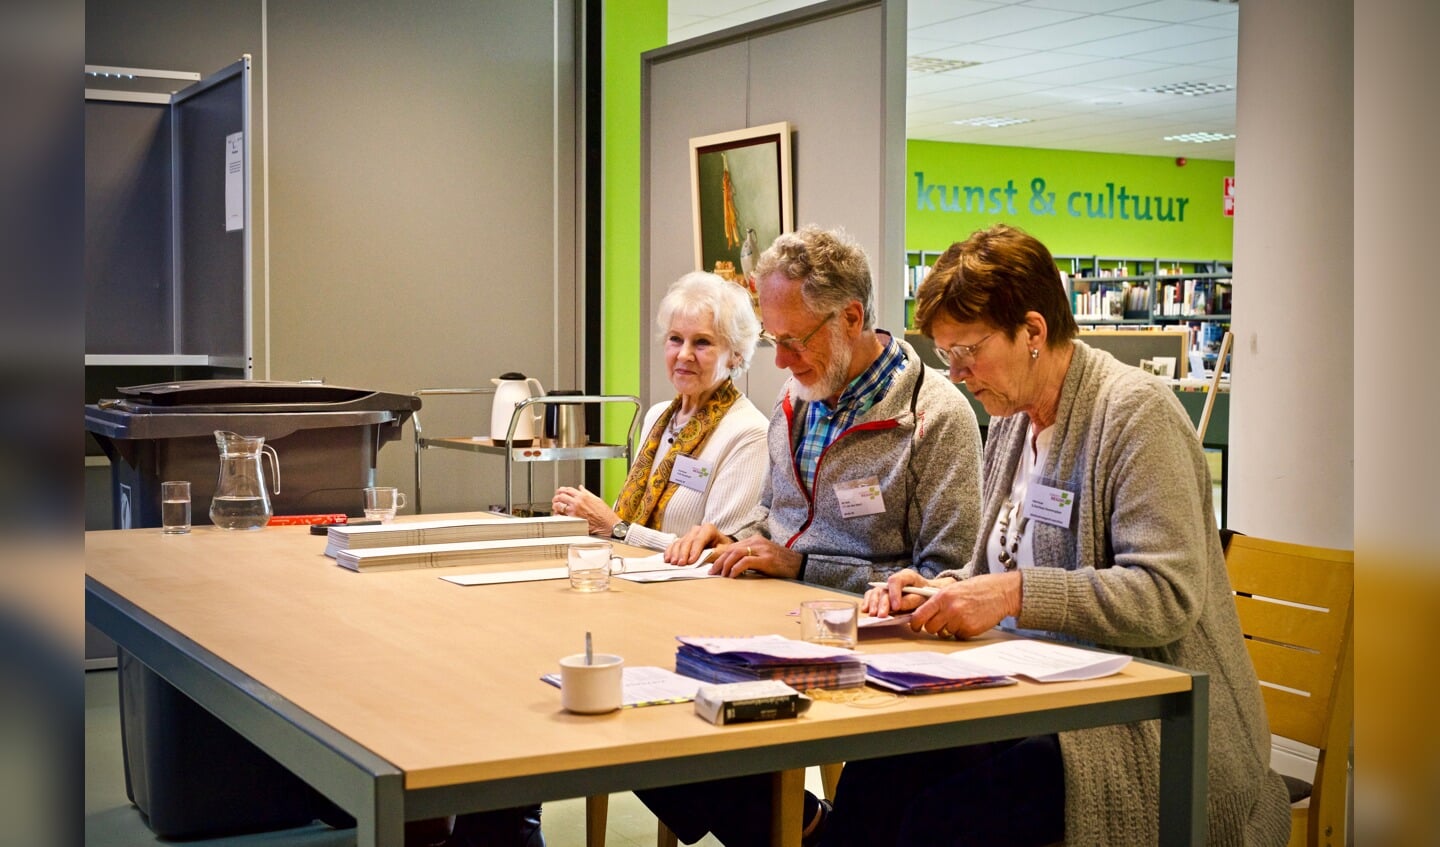 Bibliotheek, vlnr. Mevrouw Brockhoff, de heer Van den Idsert, mevrouw Gerritsen (plaatsvervangend voorzitter stembureau)
Foto: Stip Fotografie